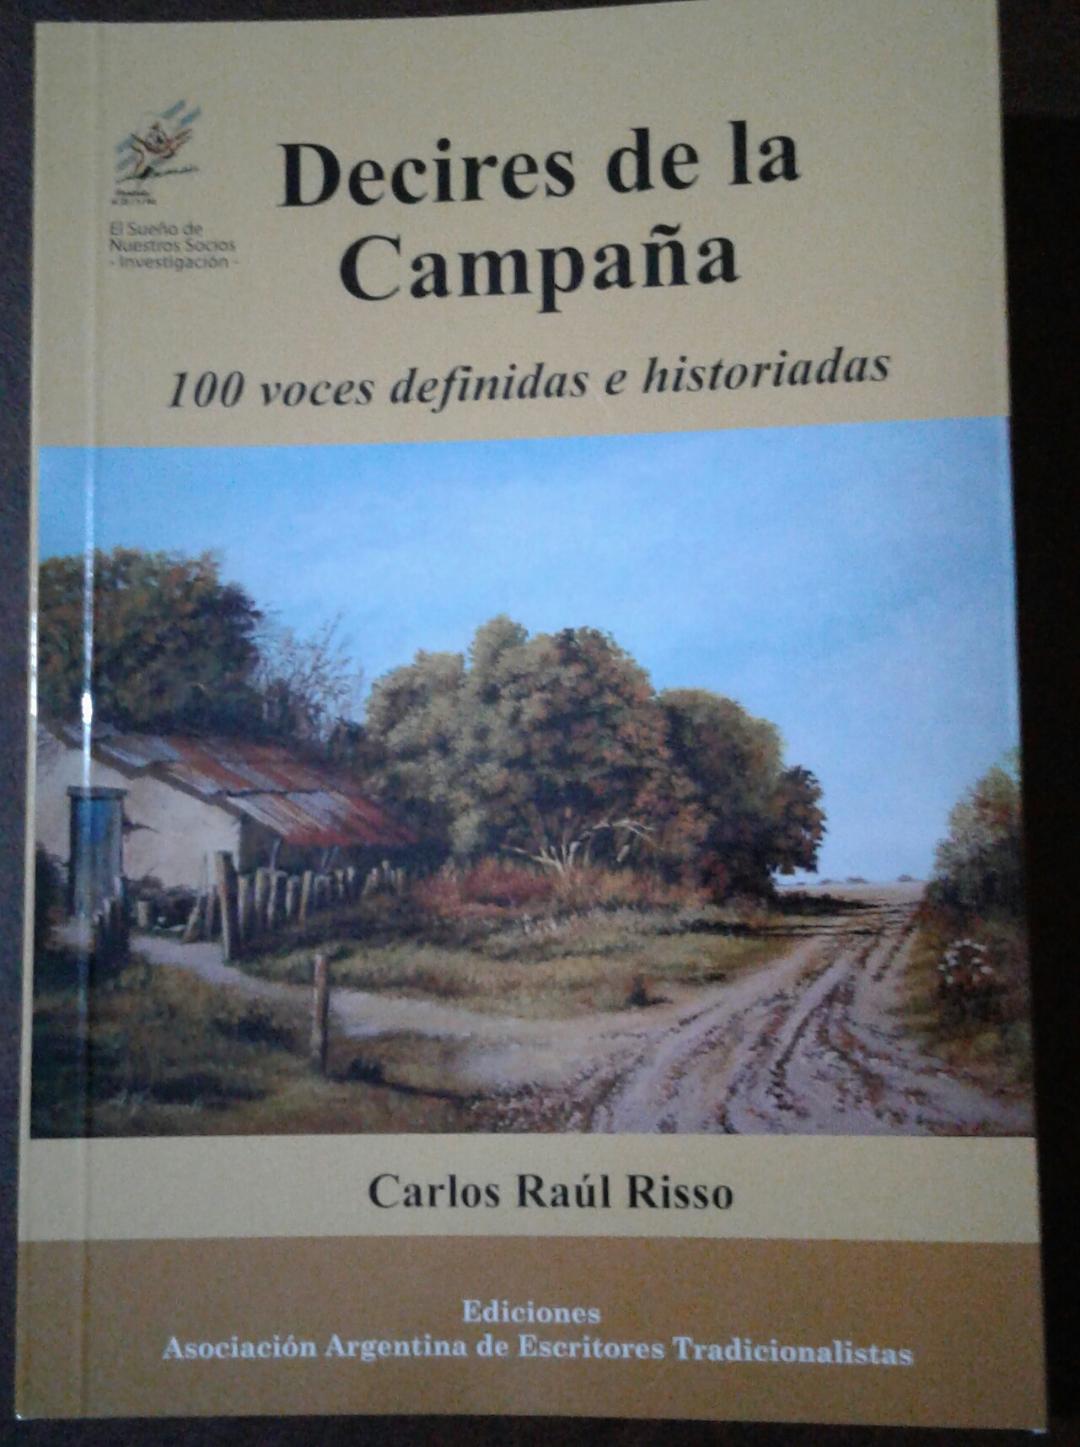 CARLOS RAÚL RISSO: "DECIRES DE LA CAMPAÑA ES UN TRABAJO QUE VENGO HACIENDO HACE TIEMPO"